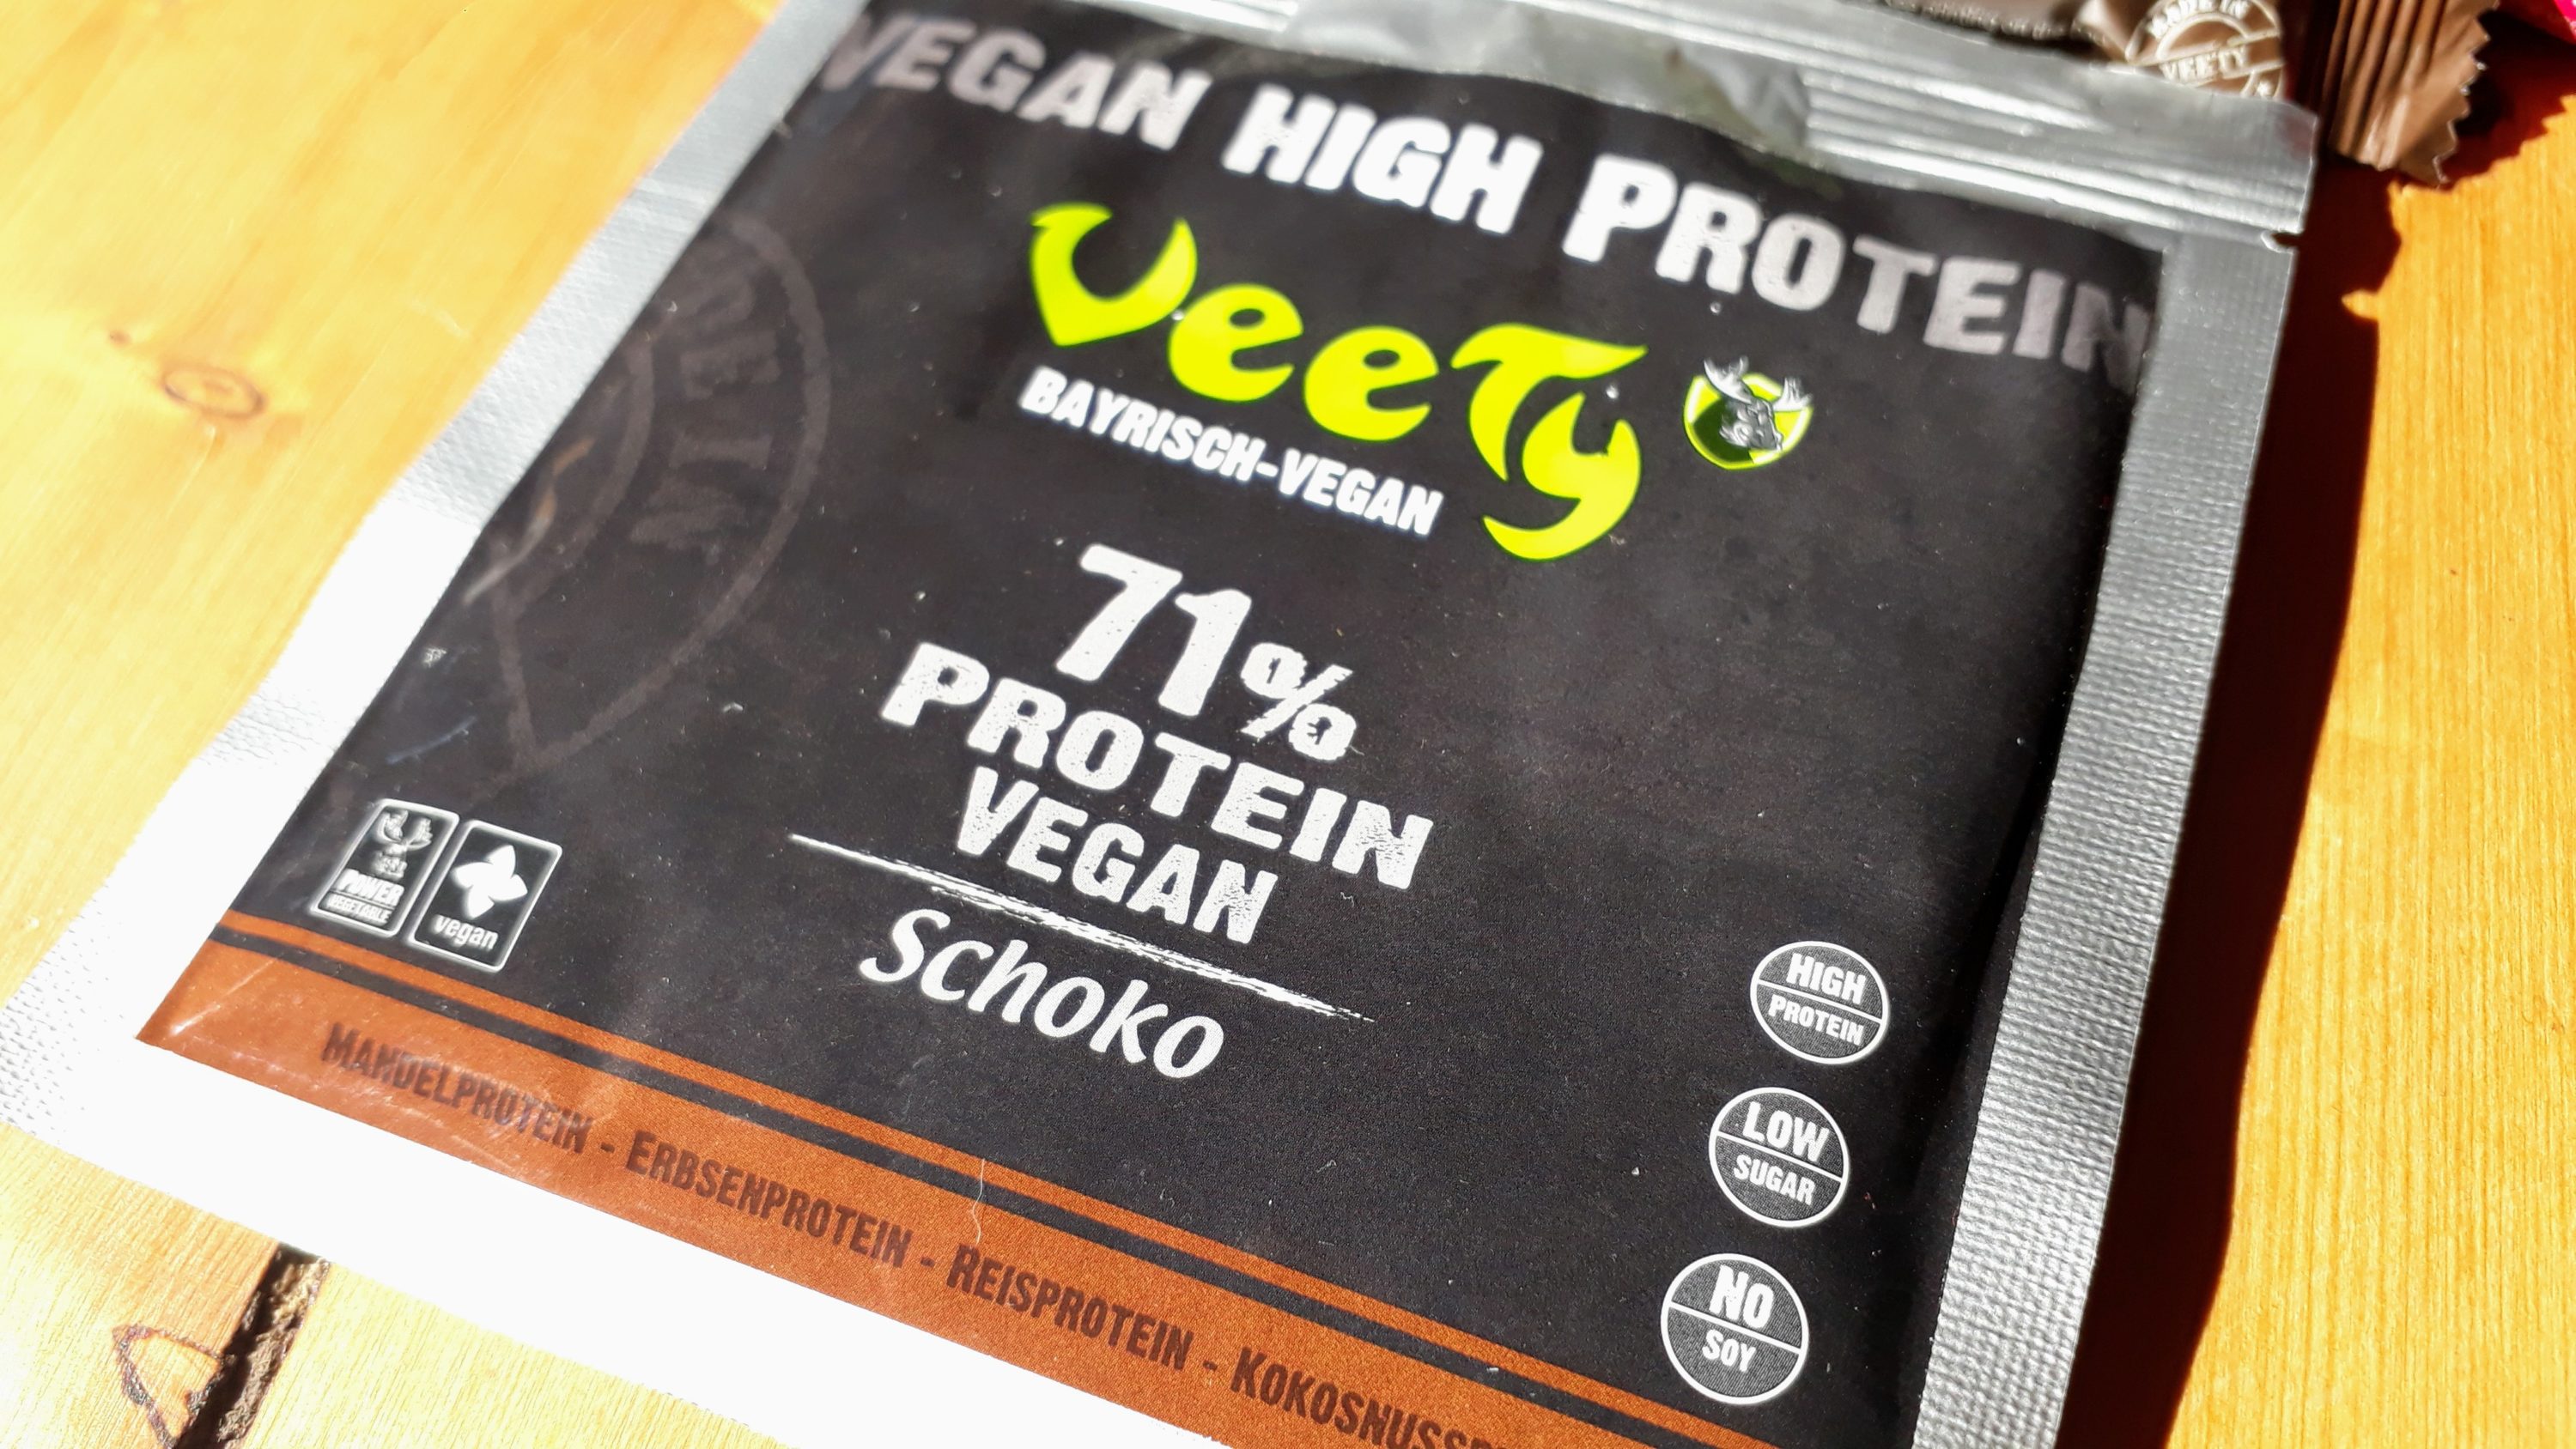 Veety - Bayrisch vegan Proteinpulver